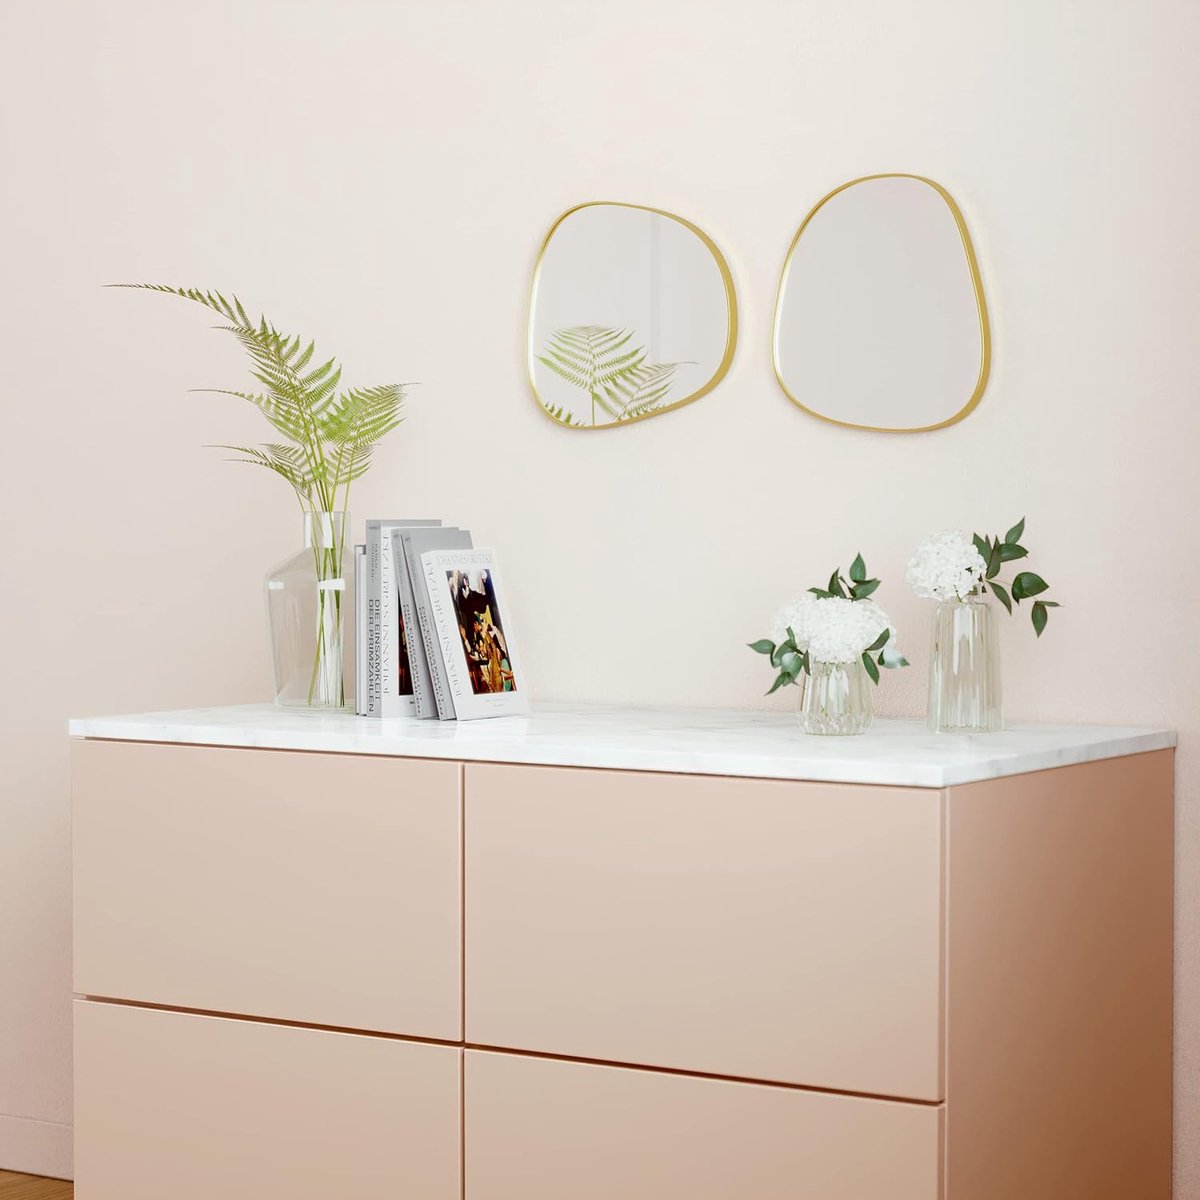 Wandspiegel ovale spiegel Adonis 32 x 30 cm goud metaal hangspiegel ovaal design wandspiegel